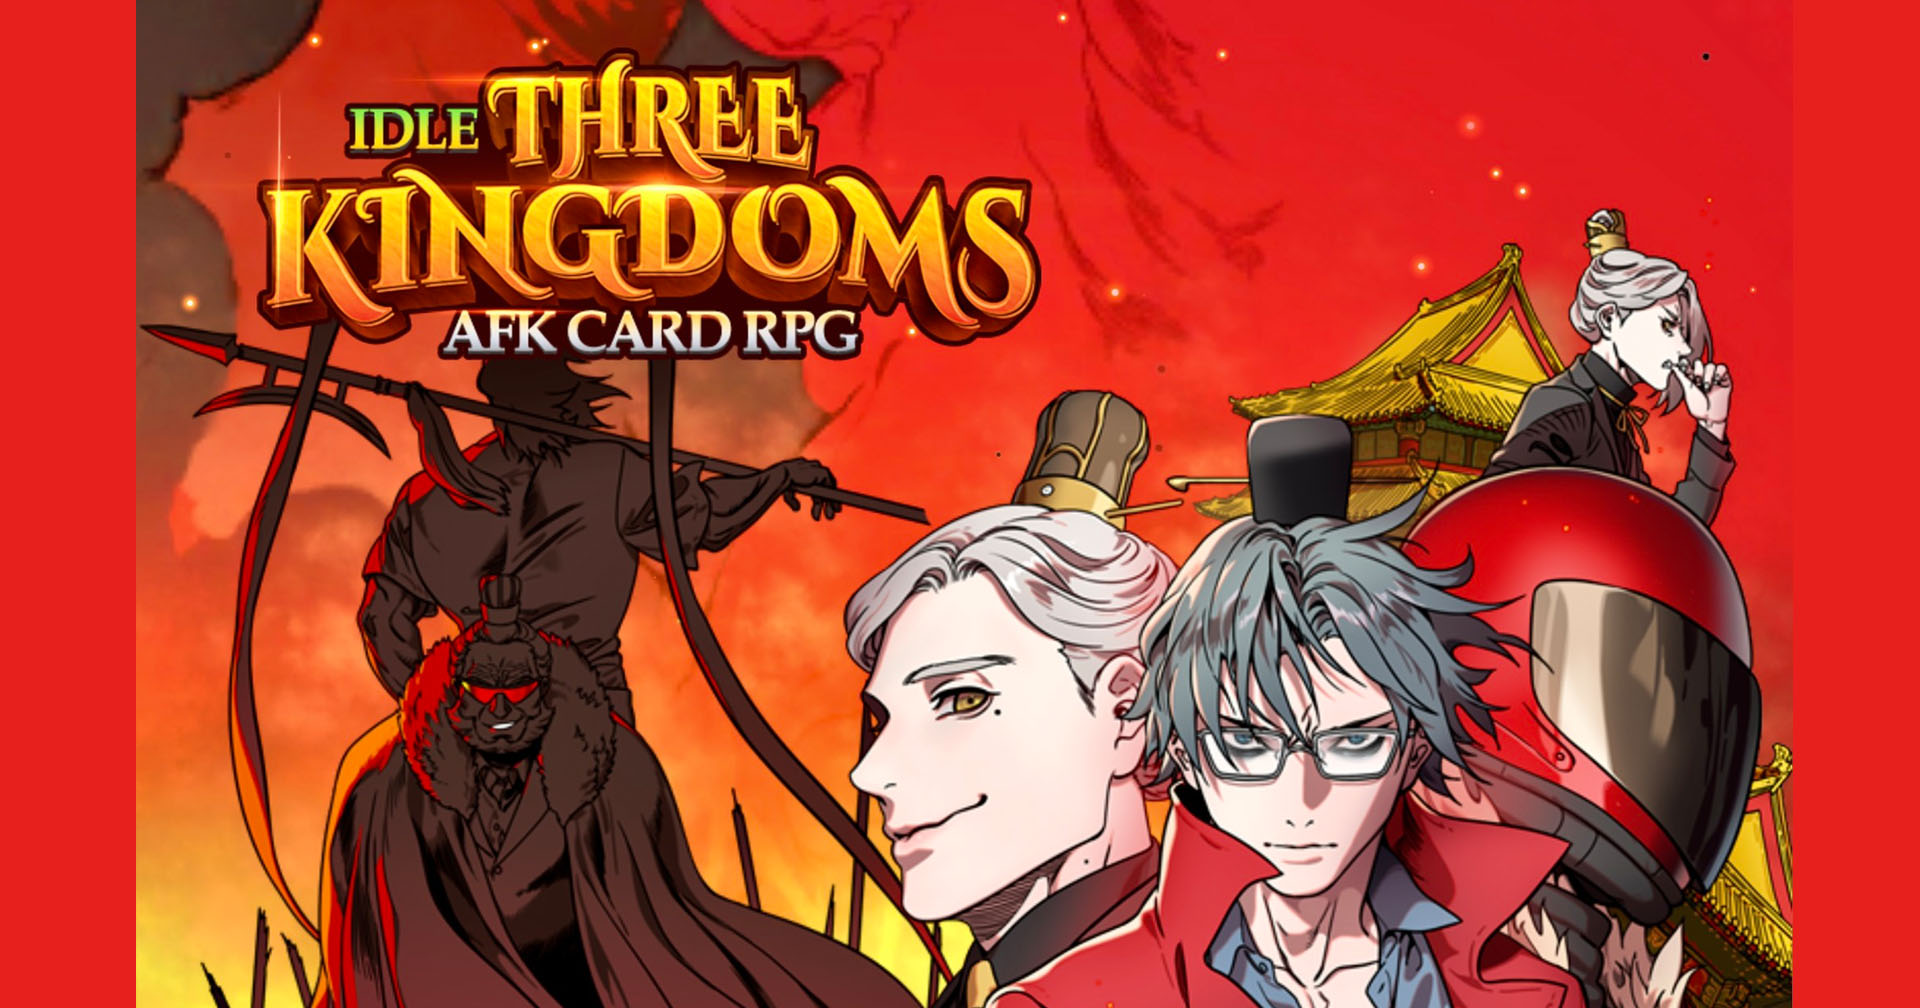 [รีวิวเกม] Idle Three Kingdoms : Card RPG เกมการ์ดขุนพลสามก๊กสุดเฟี้ยว จาก WEBTOON ชื่อดัง